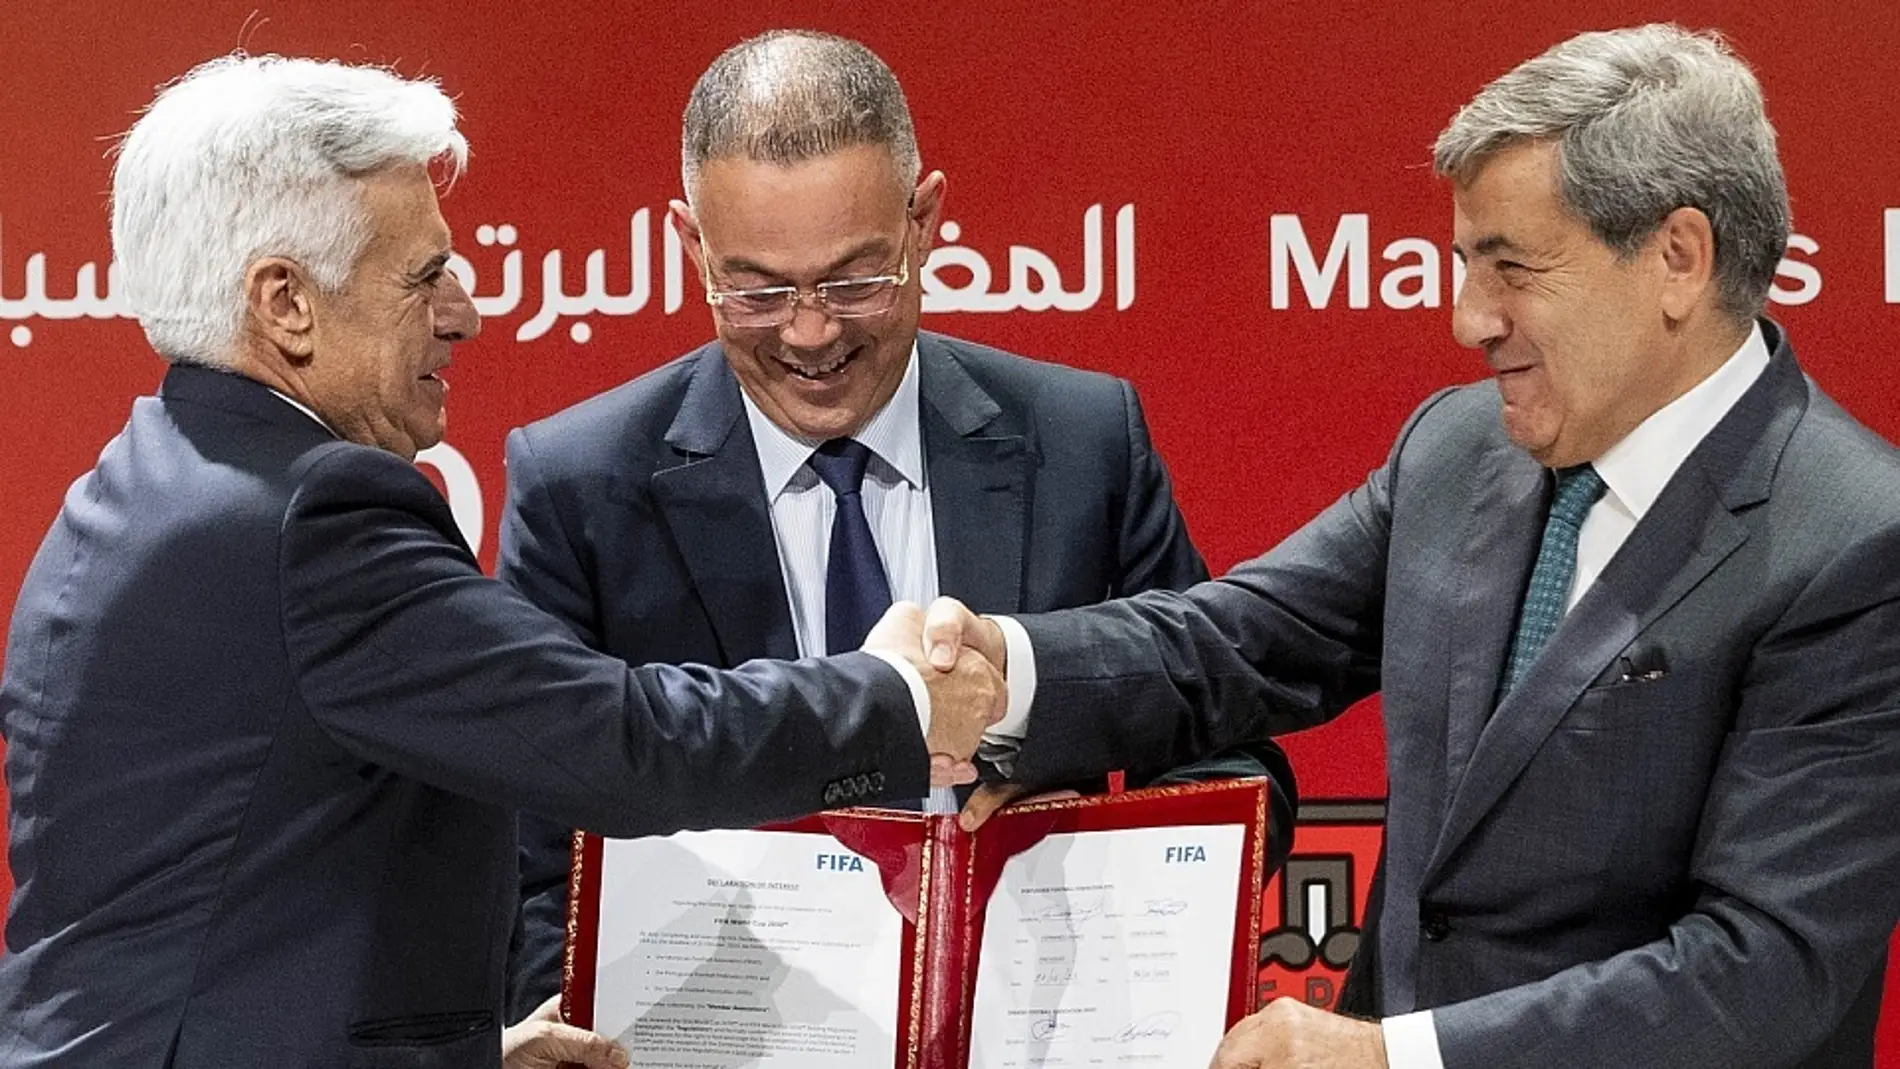 Los presidentes de las Federaciones de España, Marruecos y Portugal firman la candidatura para el Mundial 2030